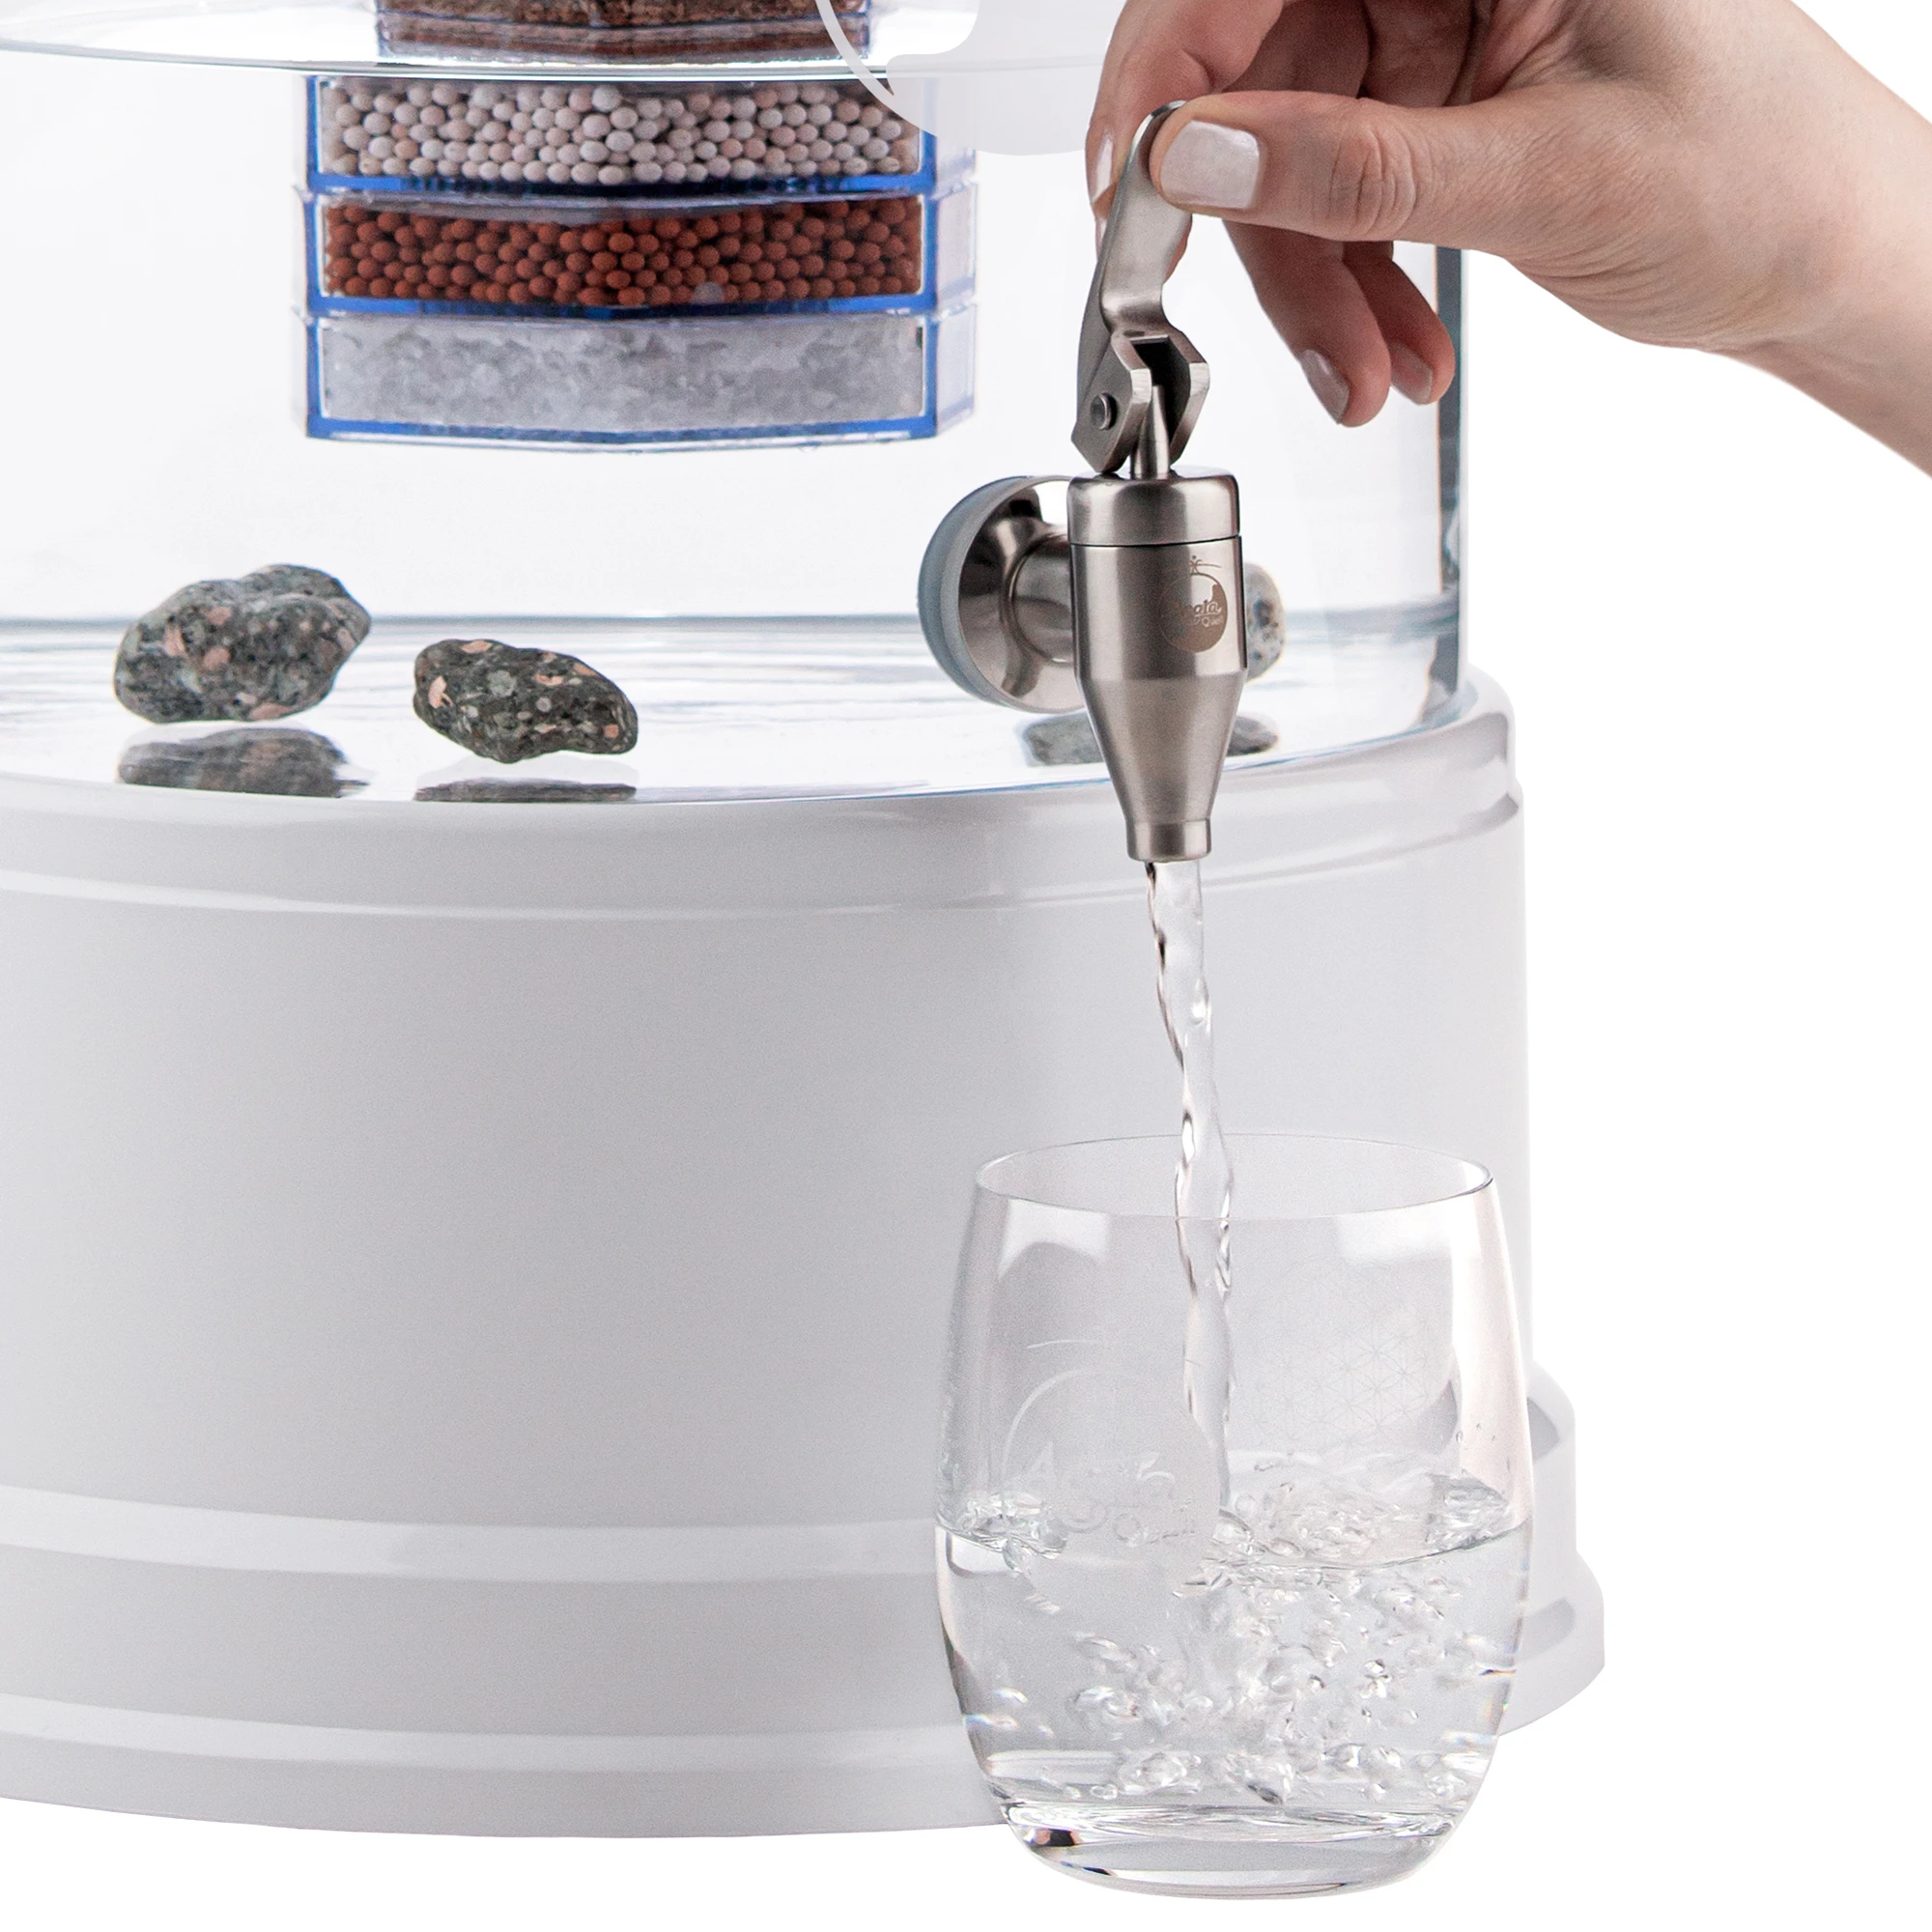 Zu sehen ist der Edelstahl Wasserhahn Yamashita für Standfilter an einem Glastank in kristallklar montiert. Der Hahn ist silber, eine Hand drückt den Hebel zum öffnen nach oben, Wasser läuft in ein darunter stehendes Glas.